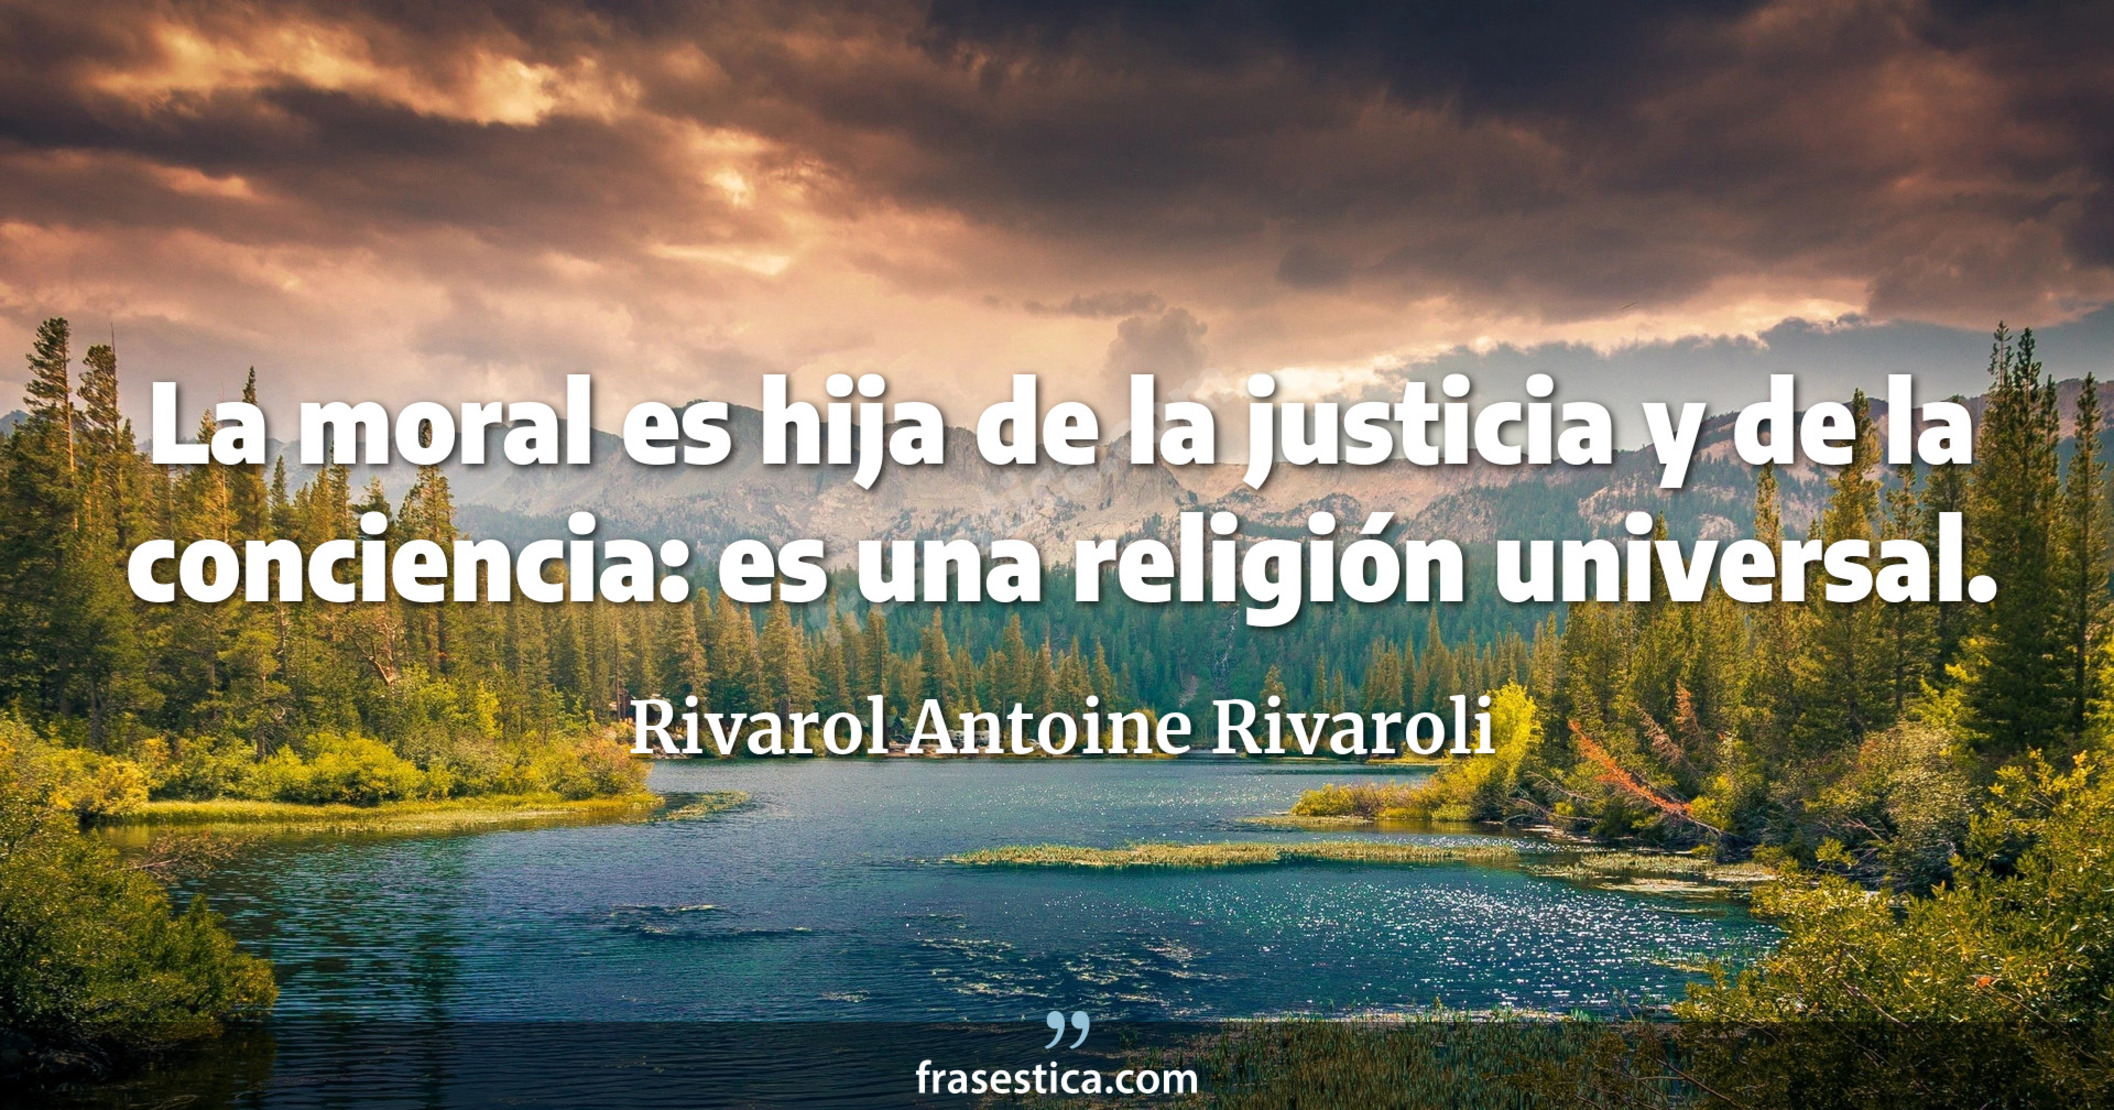 La moral es hija de la justicia y de la conciencia: es una religión universal. - Rivarol Antoine Rivaroli